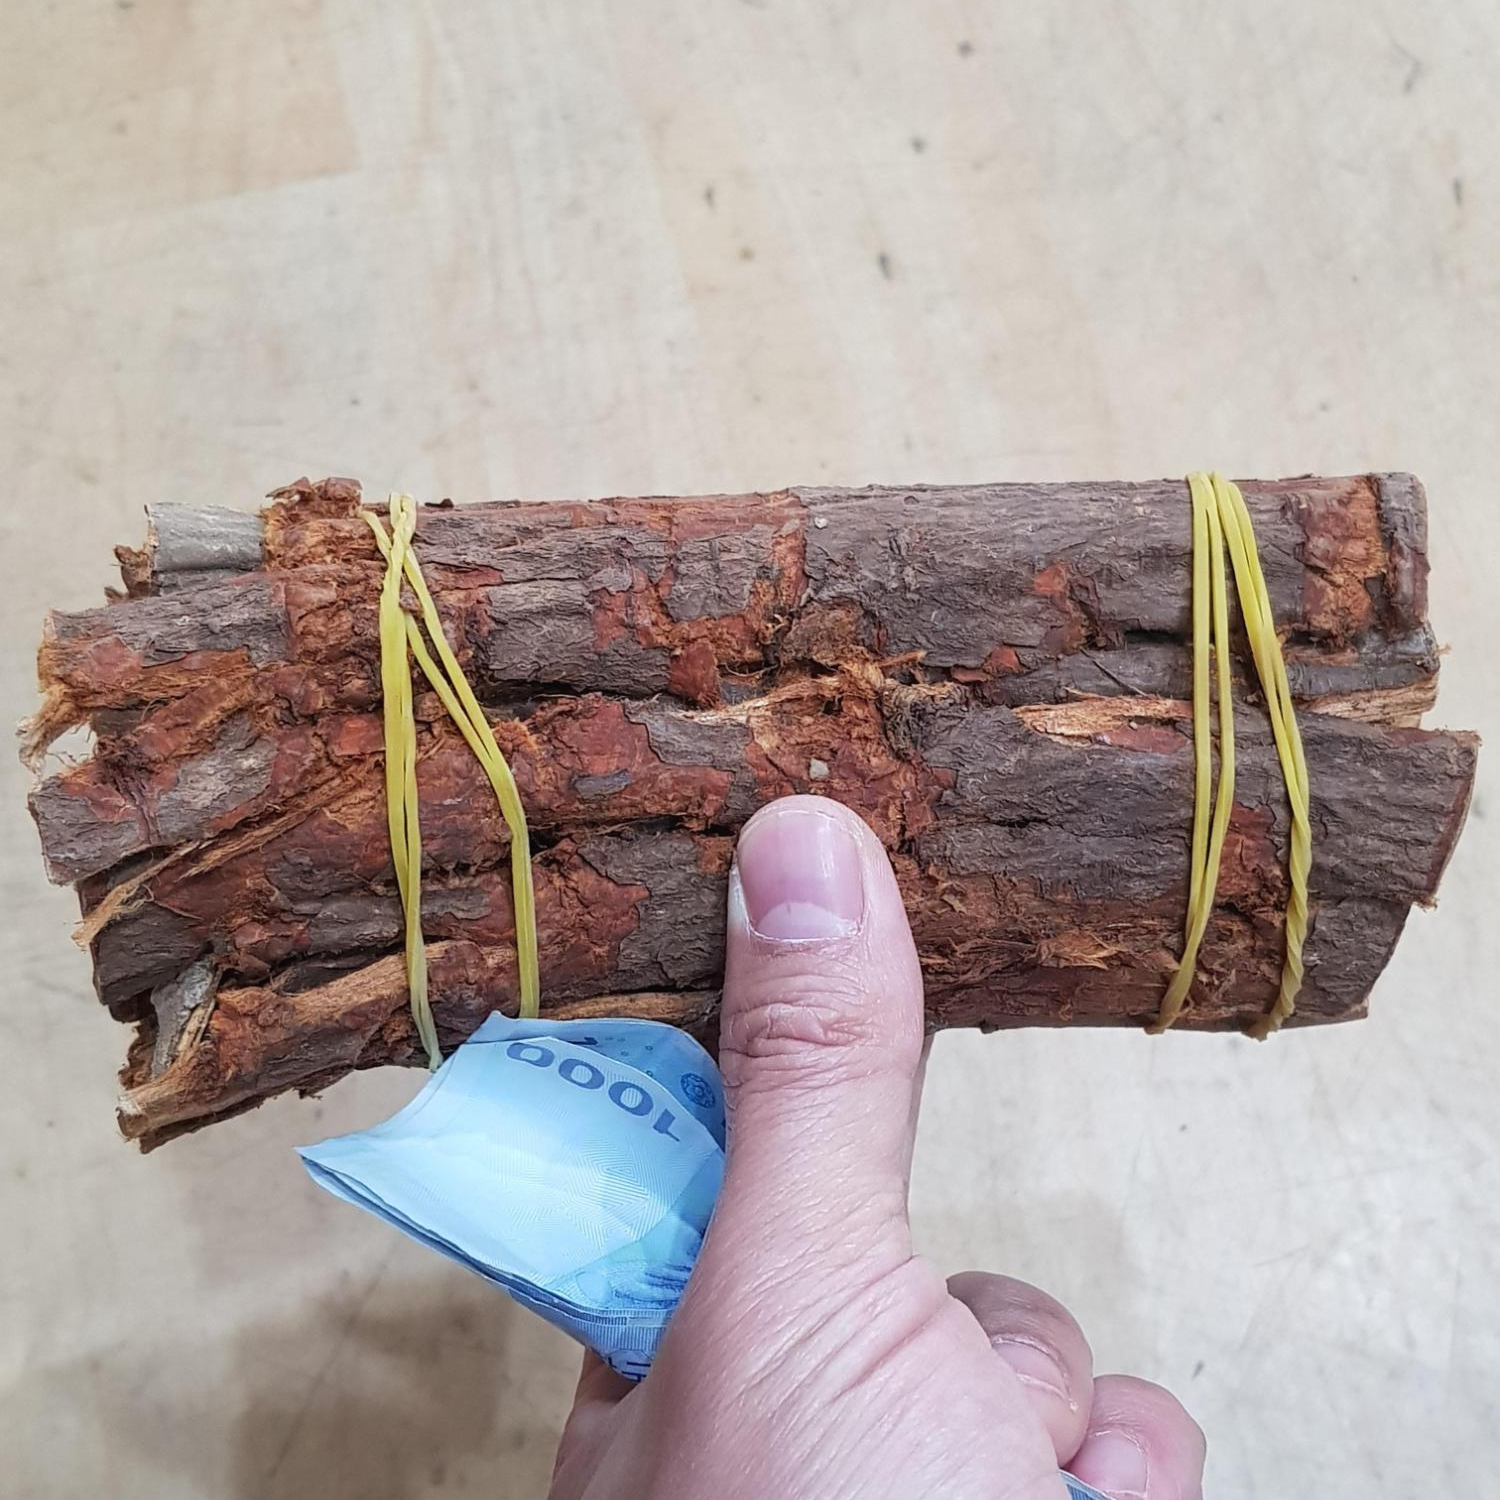 고무줄을 사용하여 단으로 묶은 건조한 국산 느릅나무 뿌리 껍질 유근피